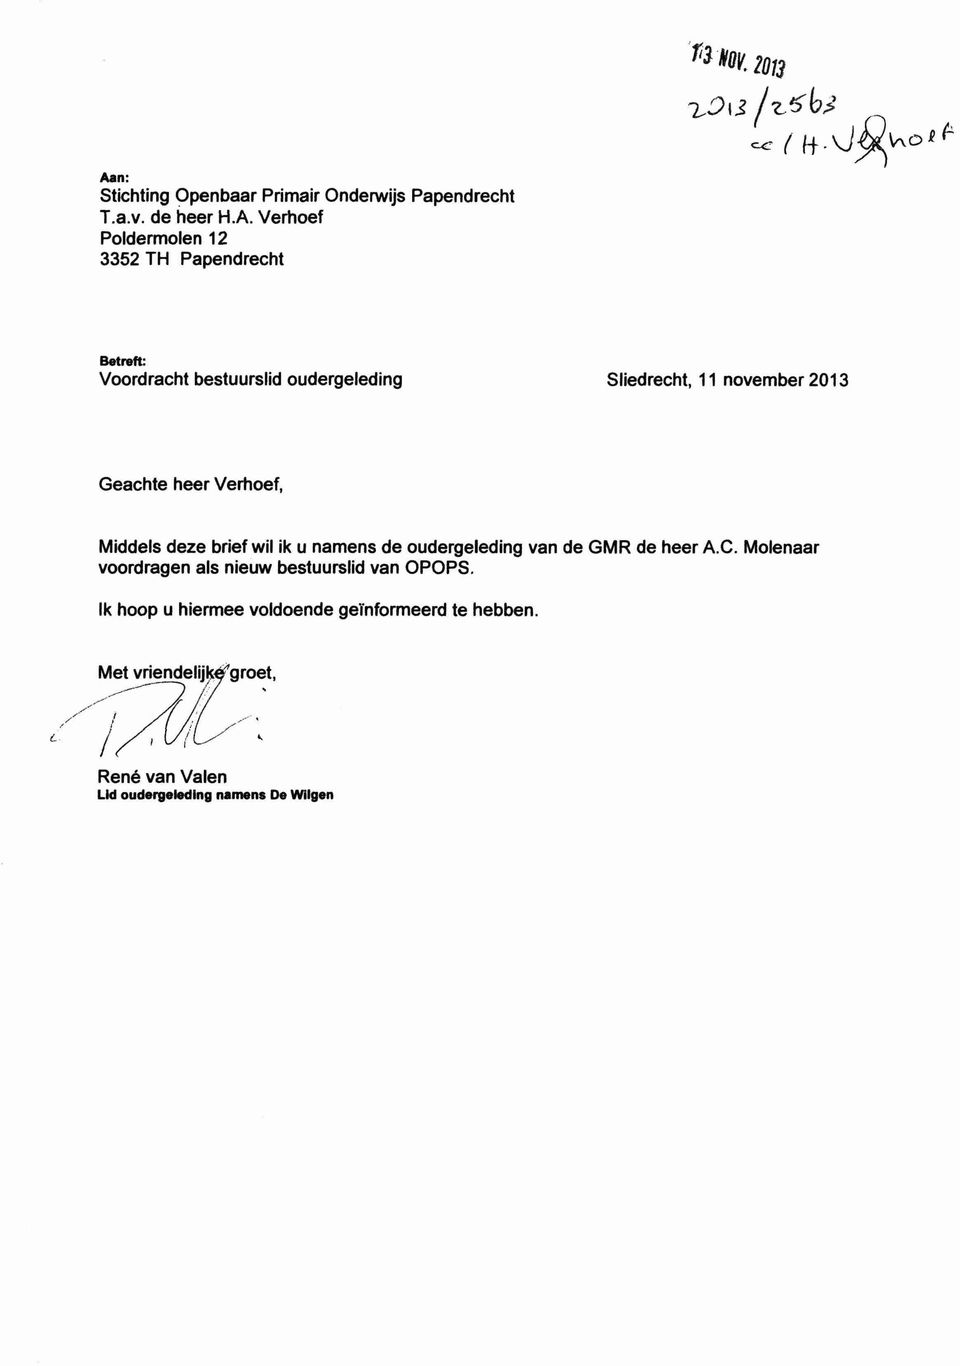 Verhoef 3352 TH Papendrecht i3 ( H-- P (1- Betreft: Voordracht bestuurslid oudergeleding Sliedrecht, 11 november 2013